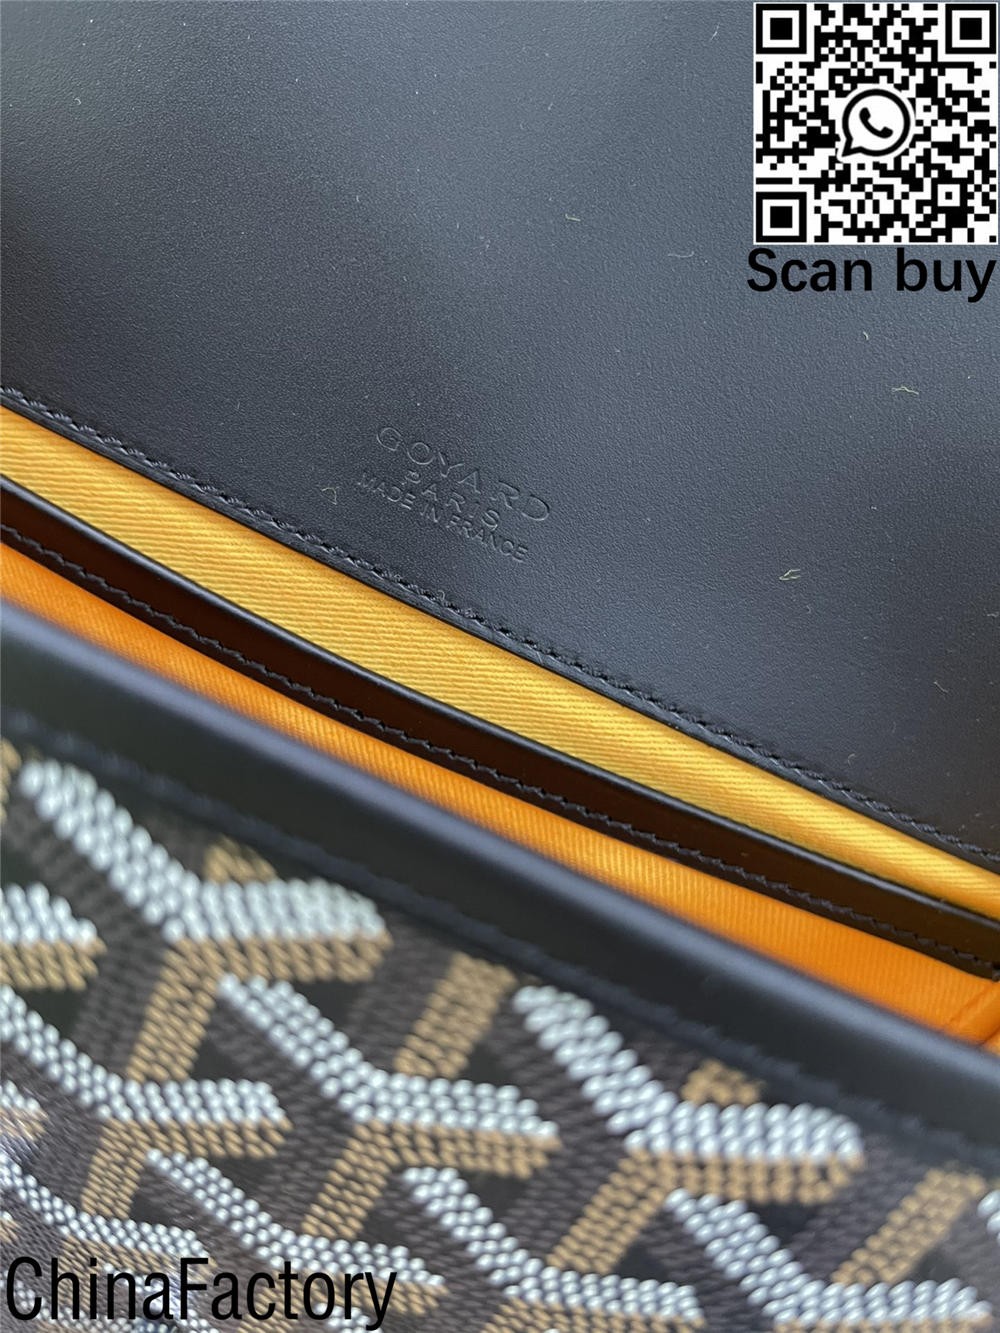 Cumu cumprà una replica di una borsa di messenger Goyard in Filippine? (Ultime 2022) - Negoziu in linea di borse Louis Vuitton falsi di megliu qualità, borsa di design di replica ru